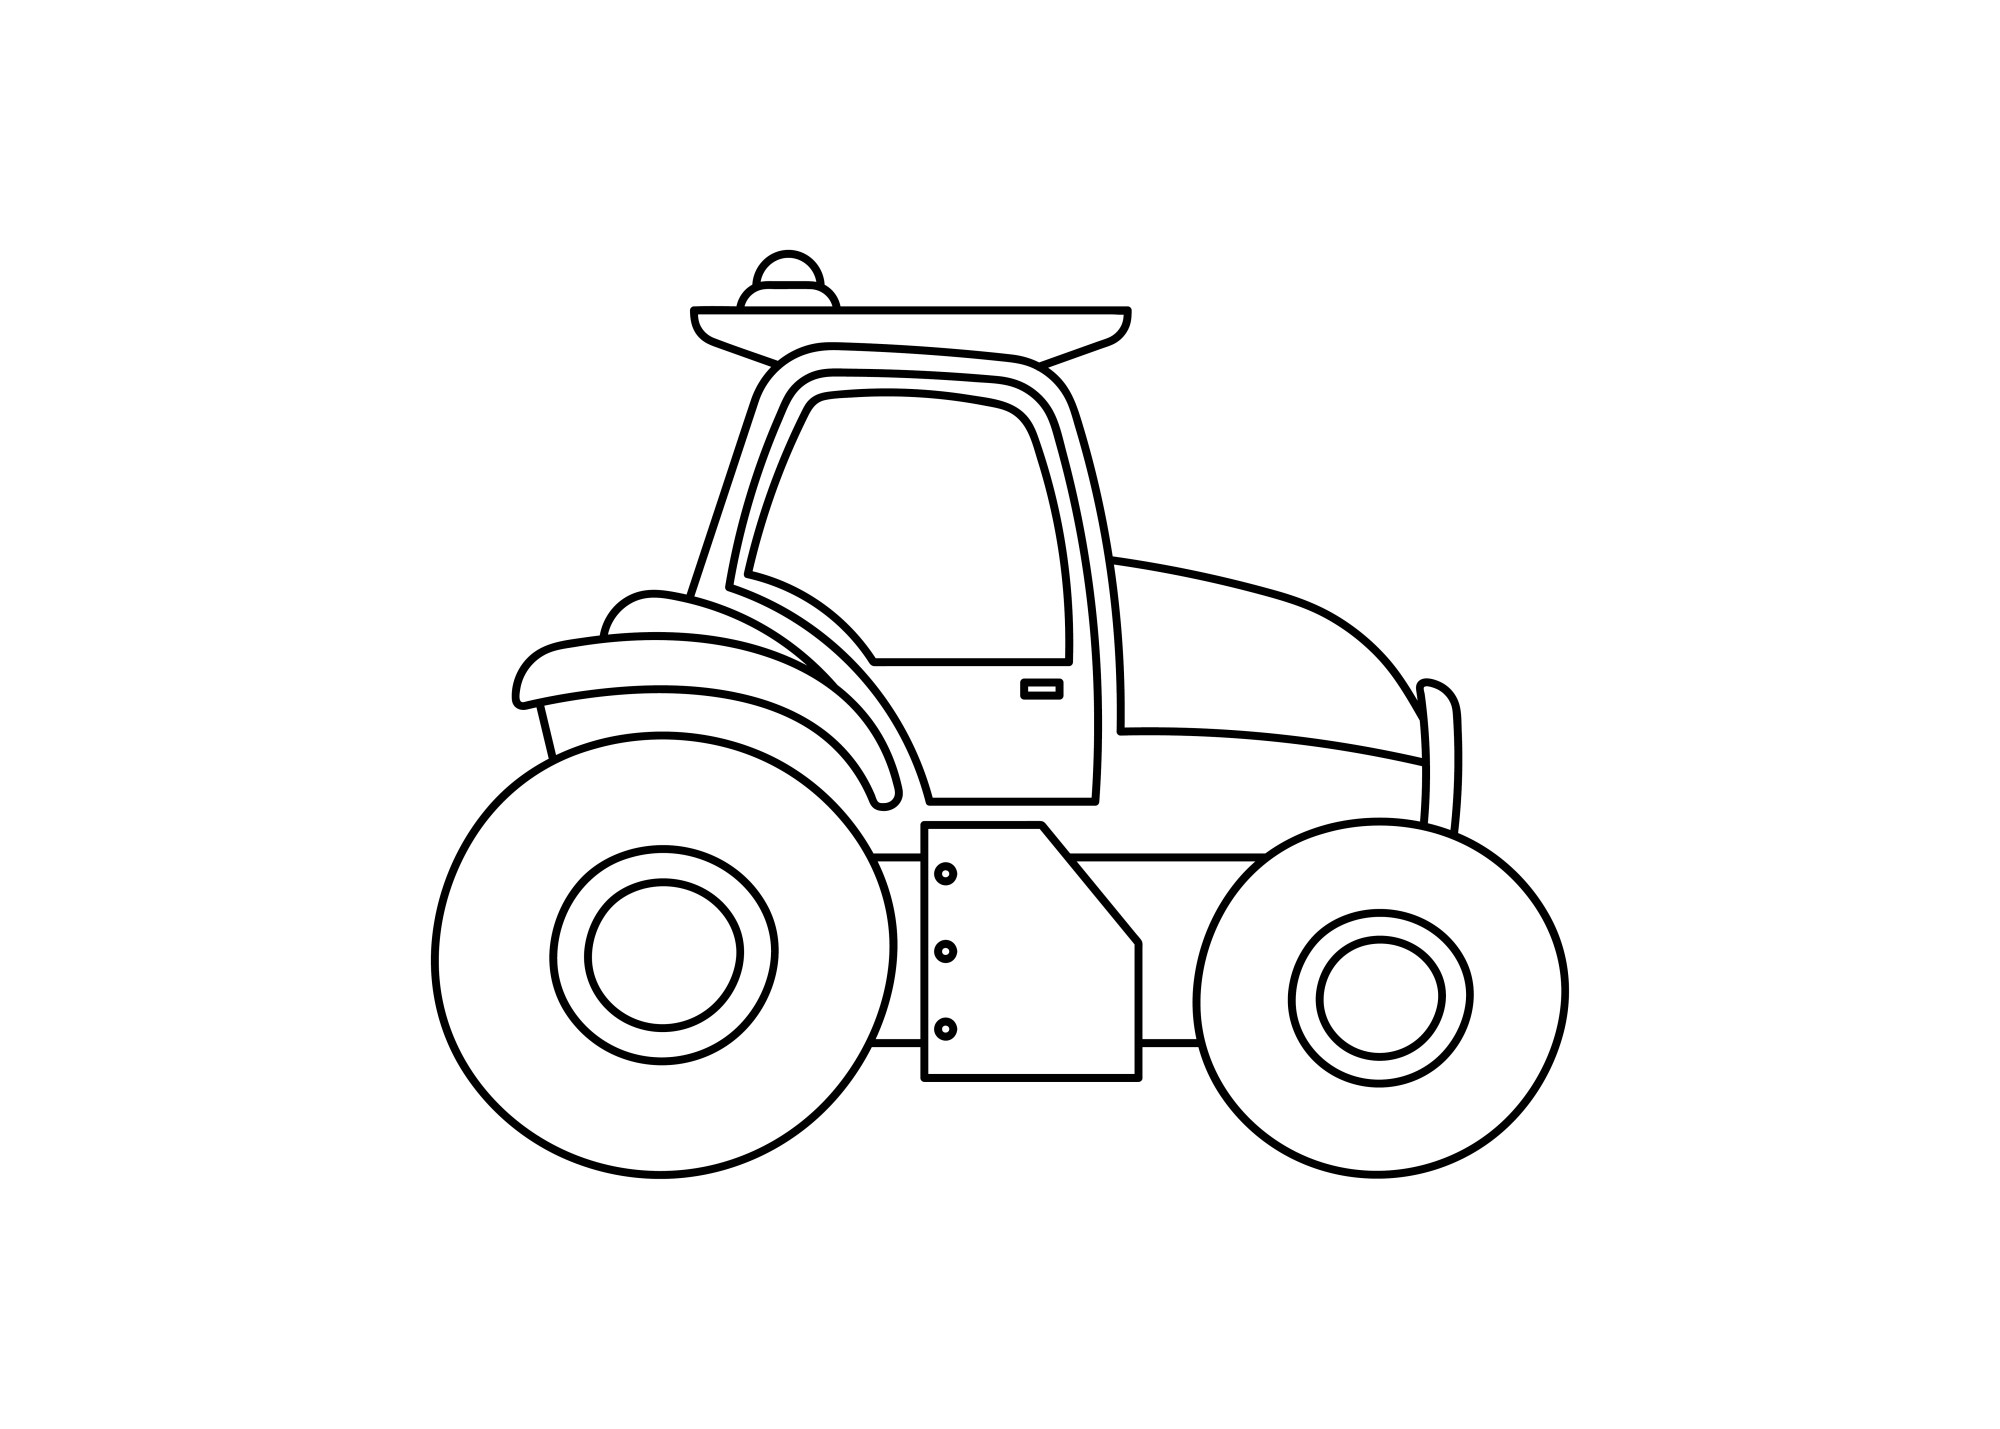 Раскраска для детей: маленький детский трактор